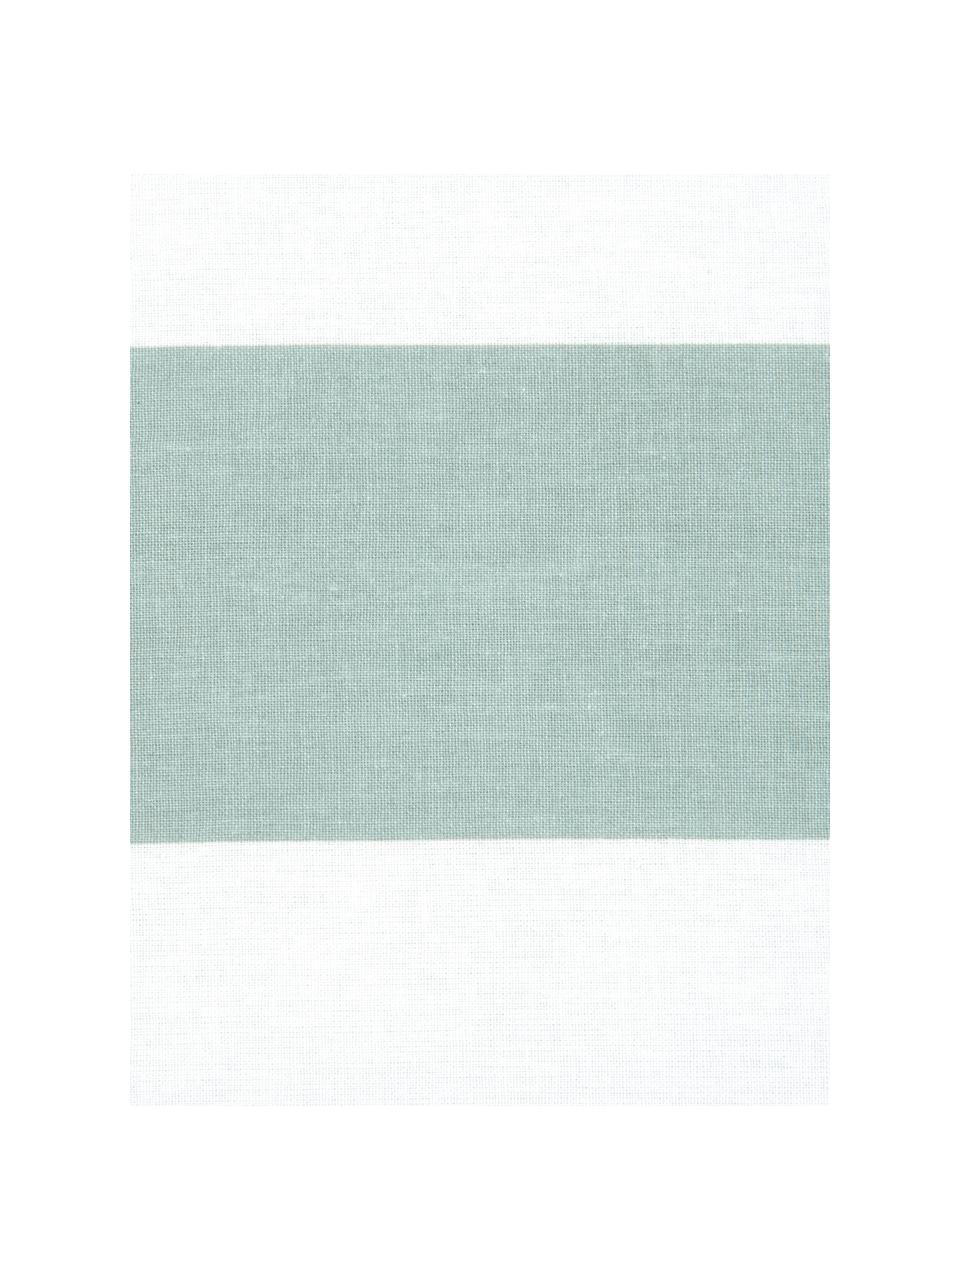 Funda de almohada doble cara de algodón a rayas Lorena, Verde salvia, blanco, An 45 x L 85 cm